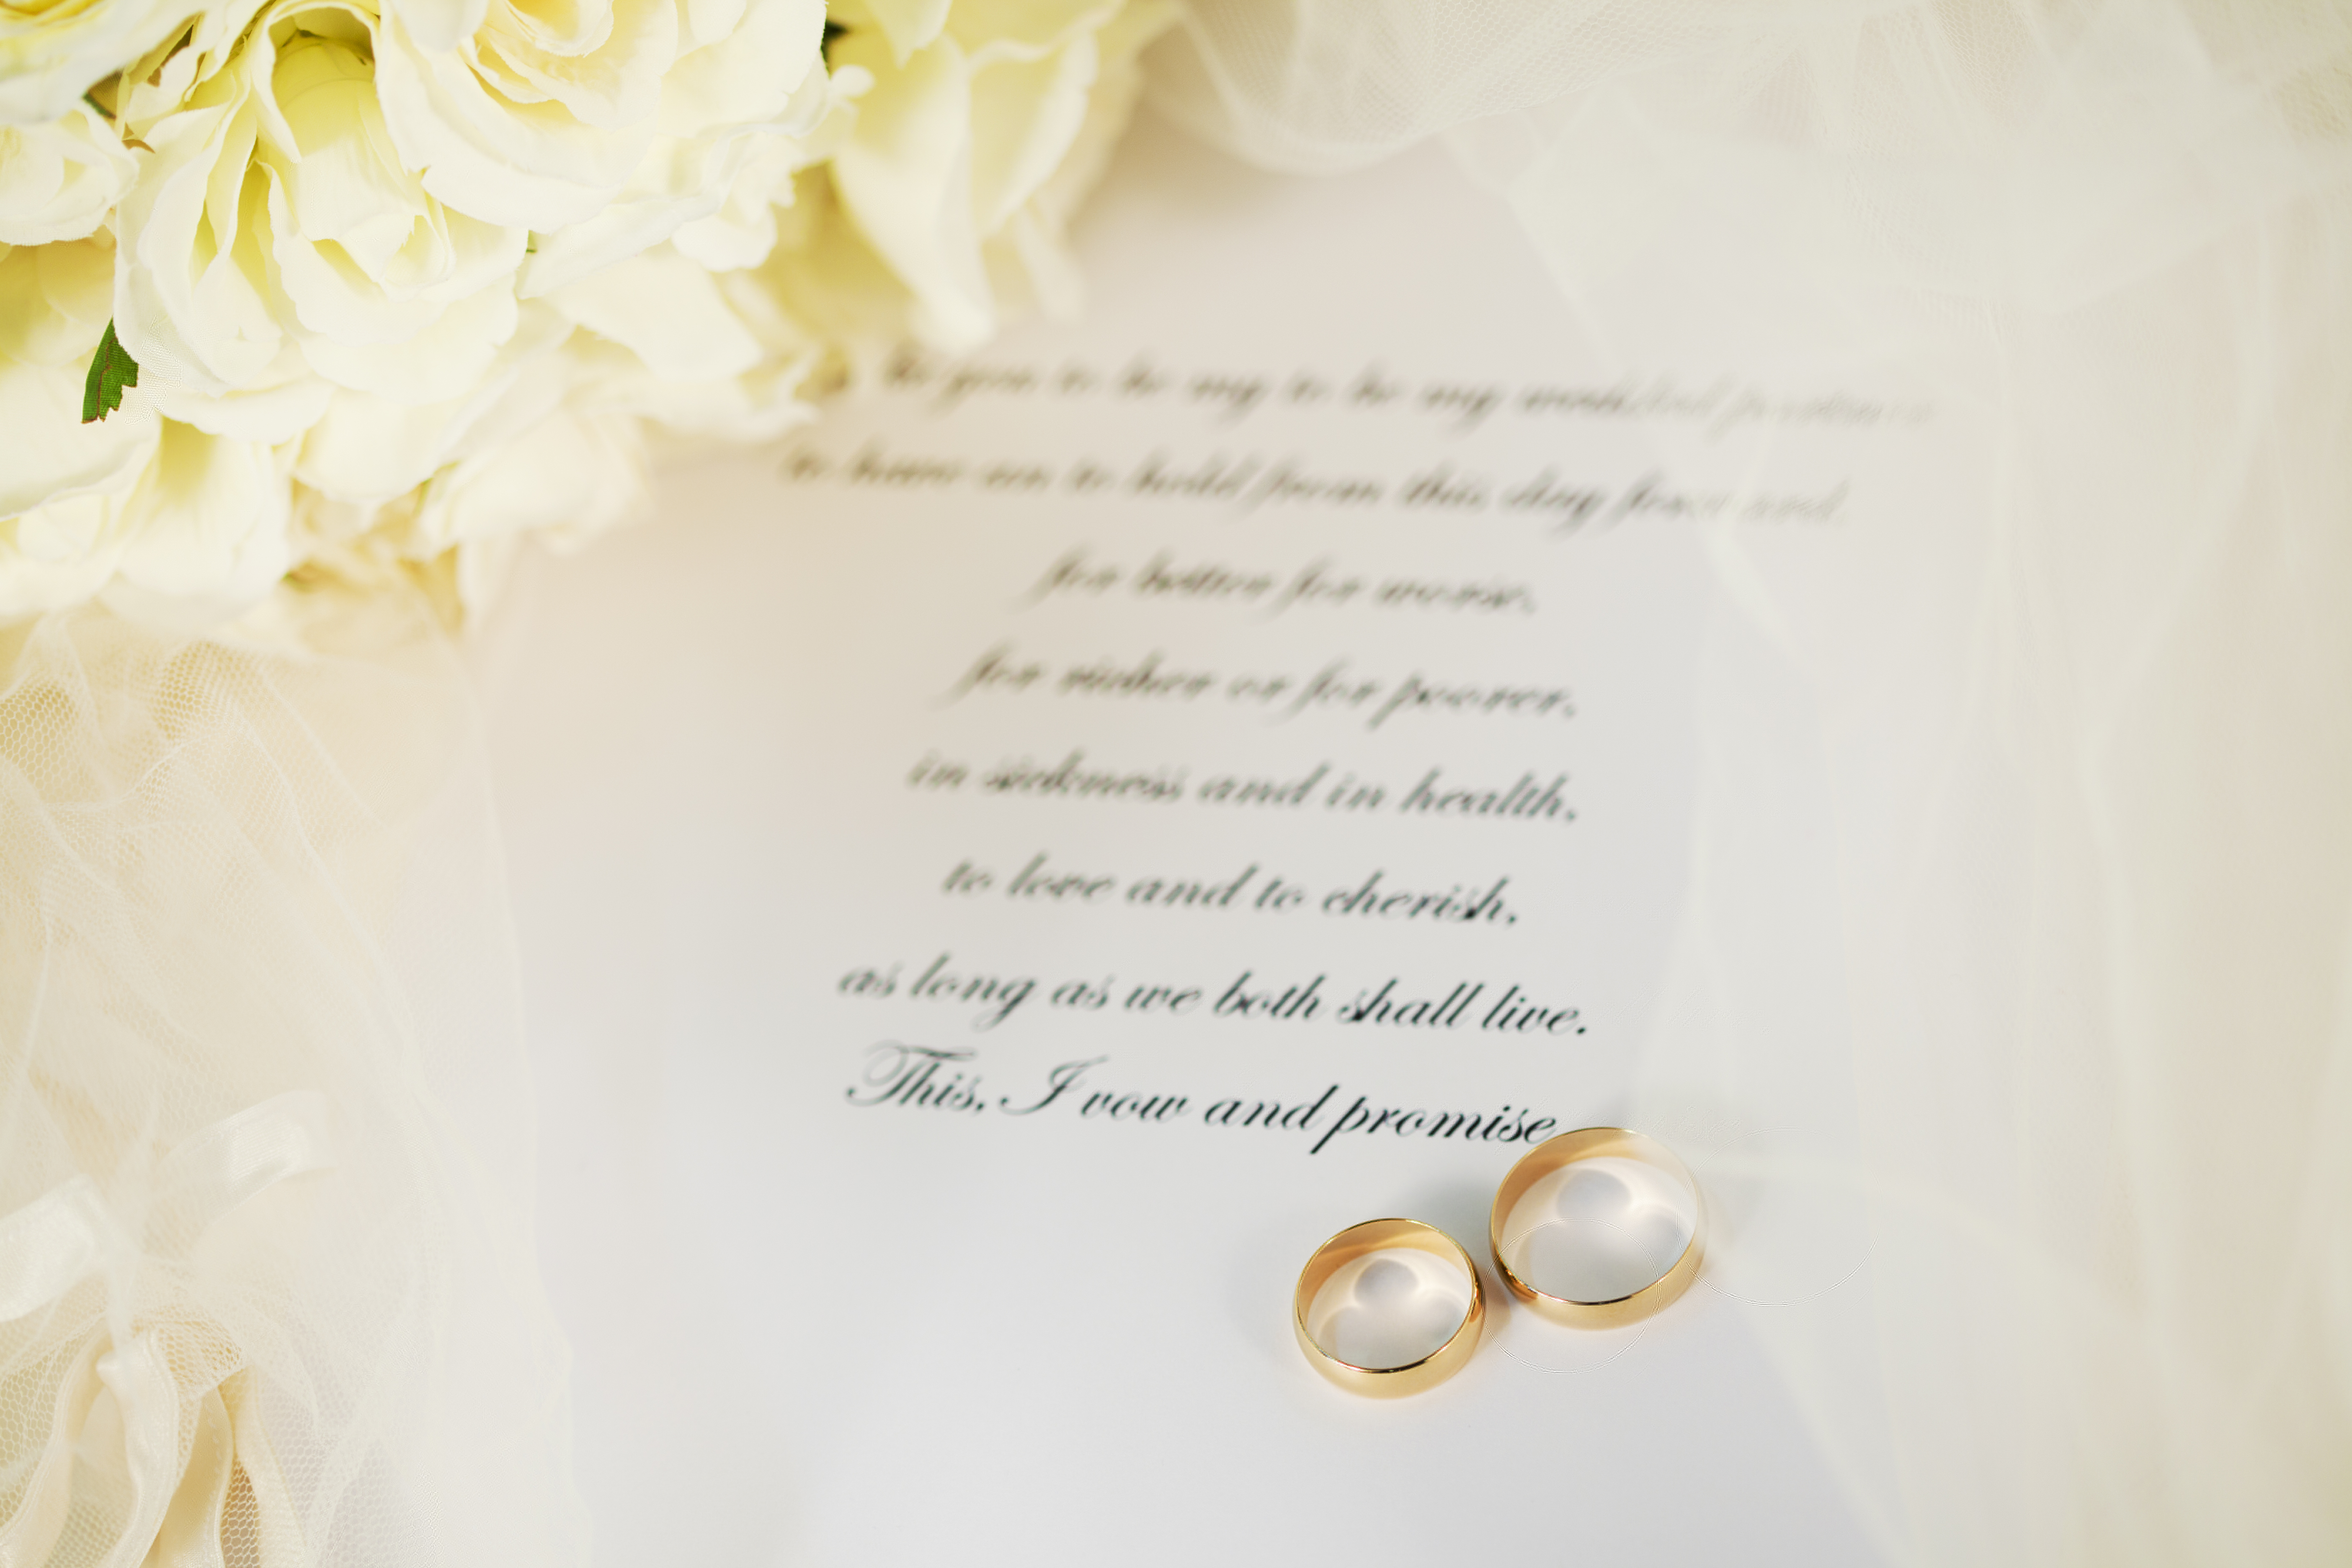 renewal of wedding vows